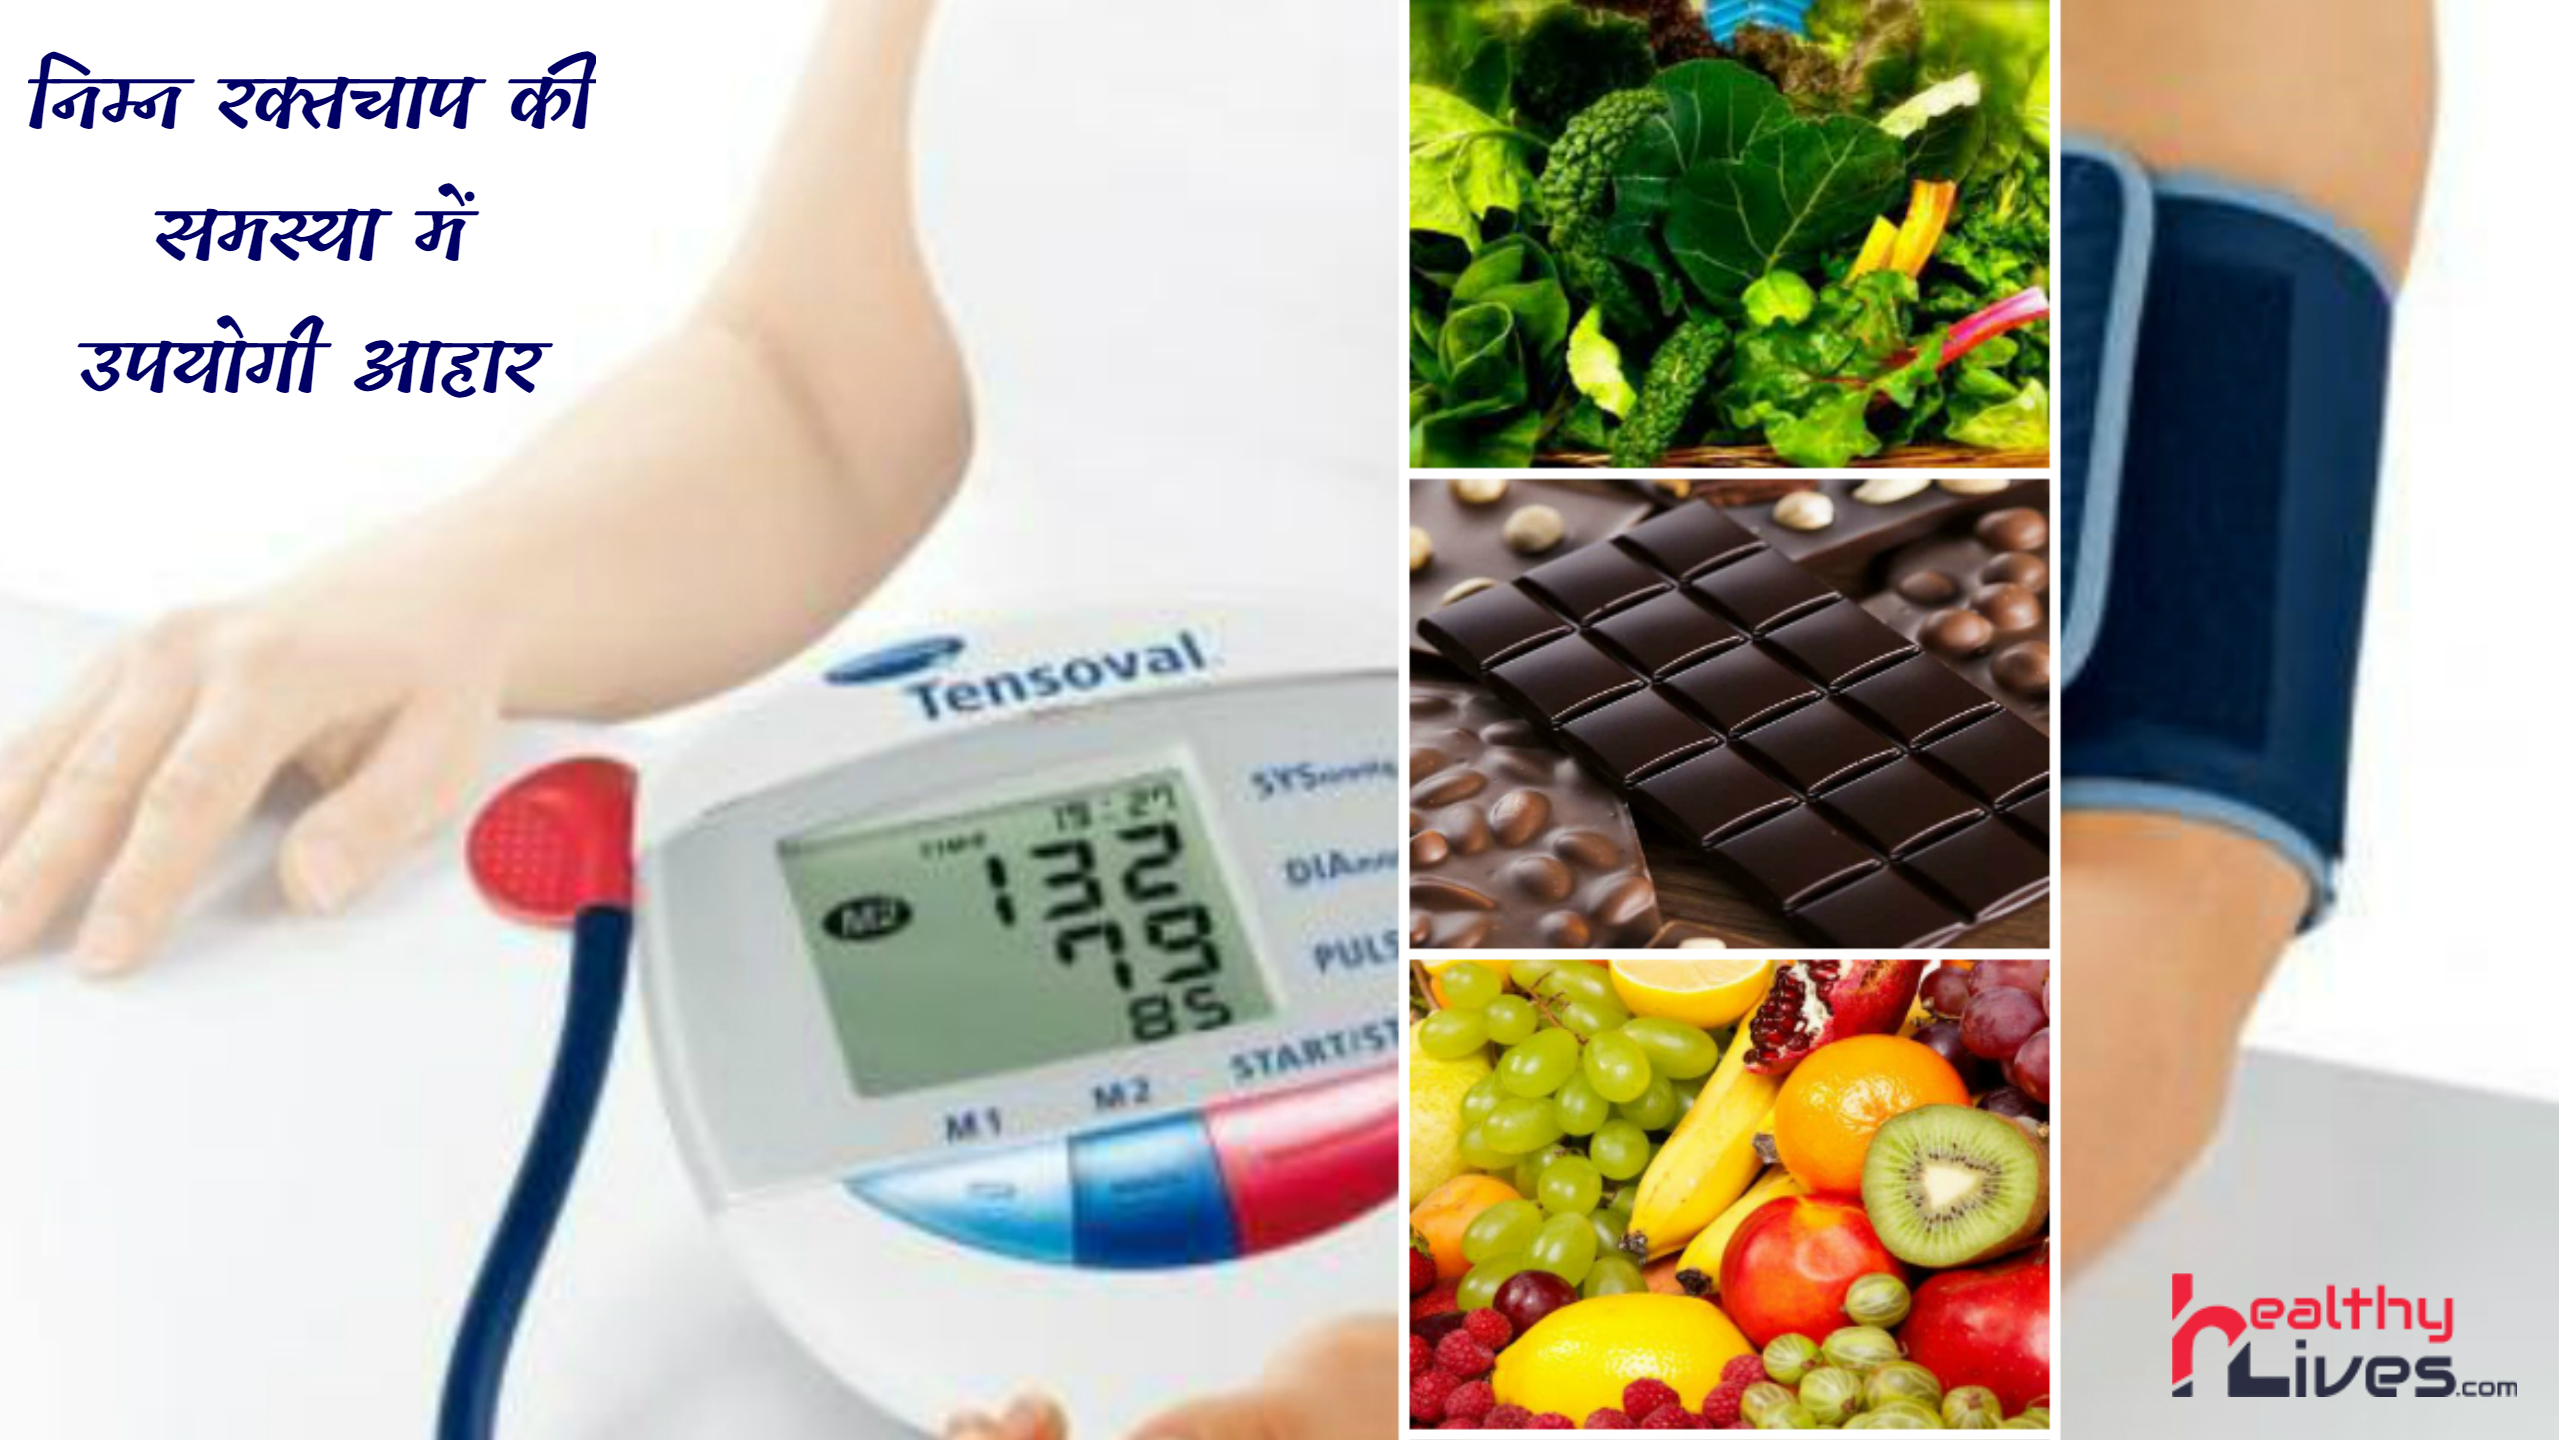 Food for Low Blood Pressure: खाद्य पदार्थ जो रखे निम्न रक्त चाप को नियंत्रित